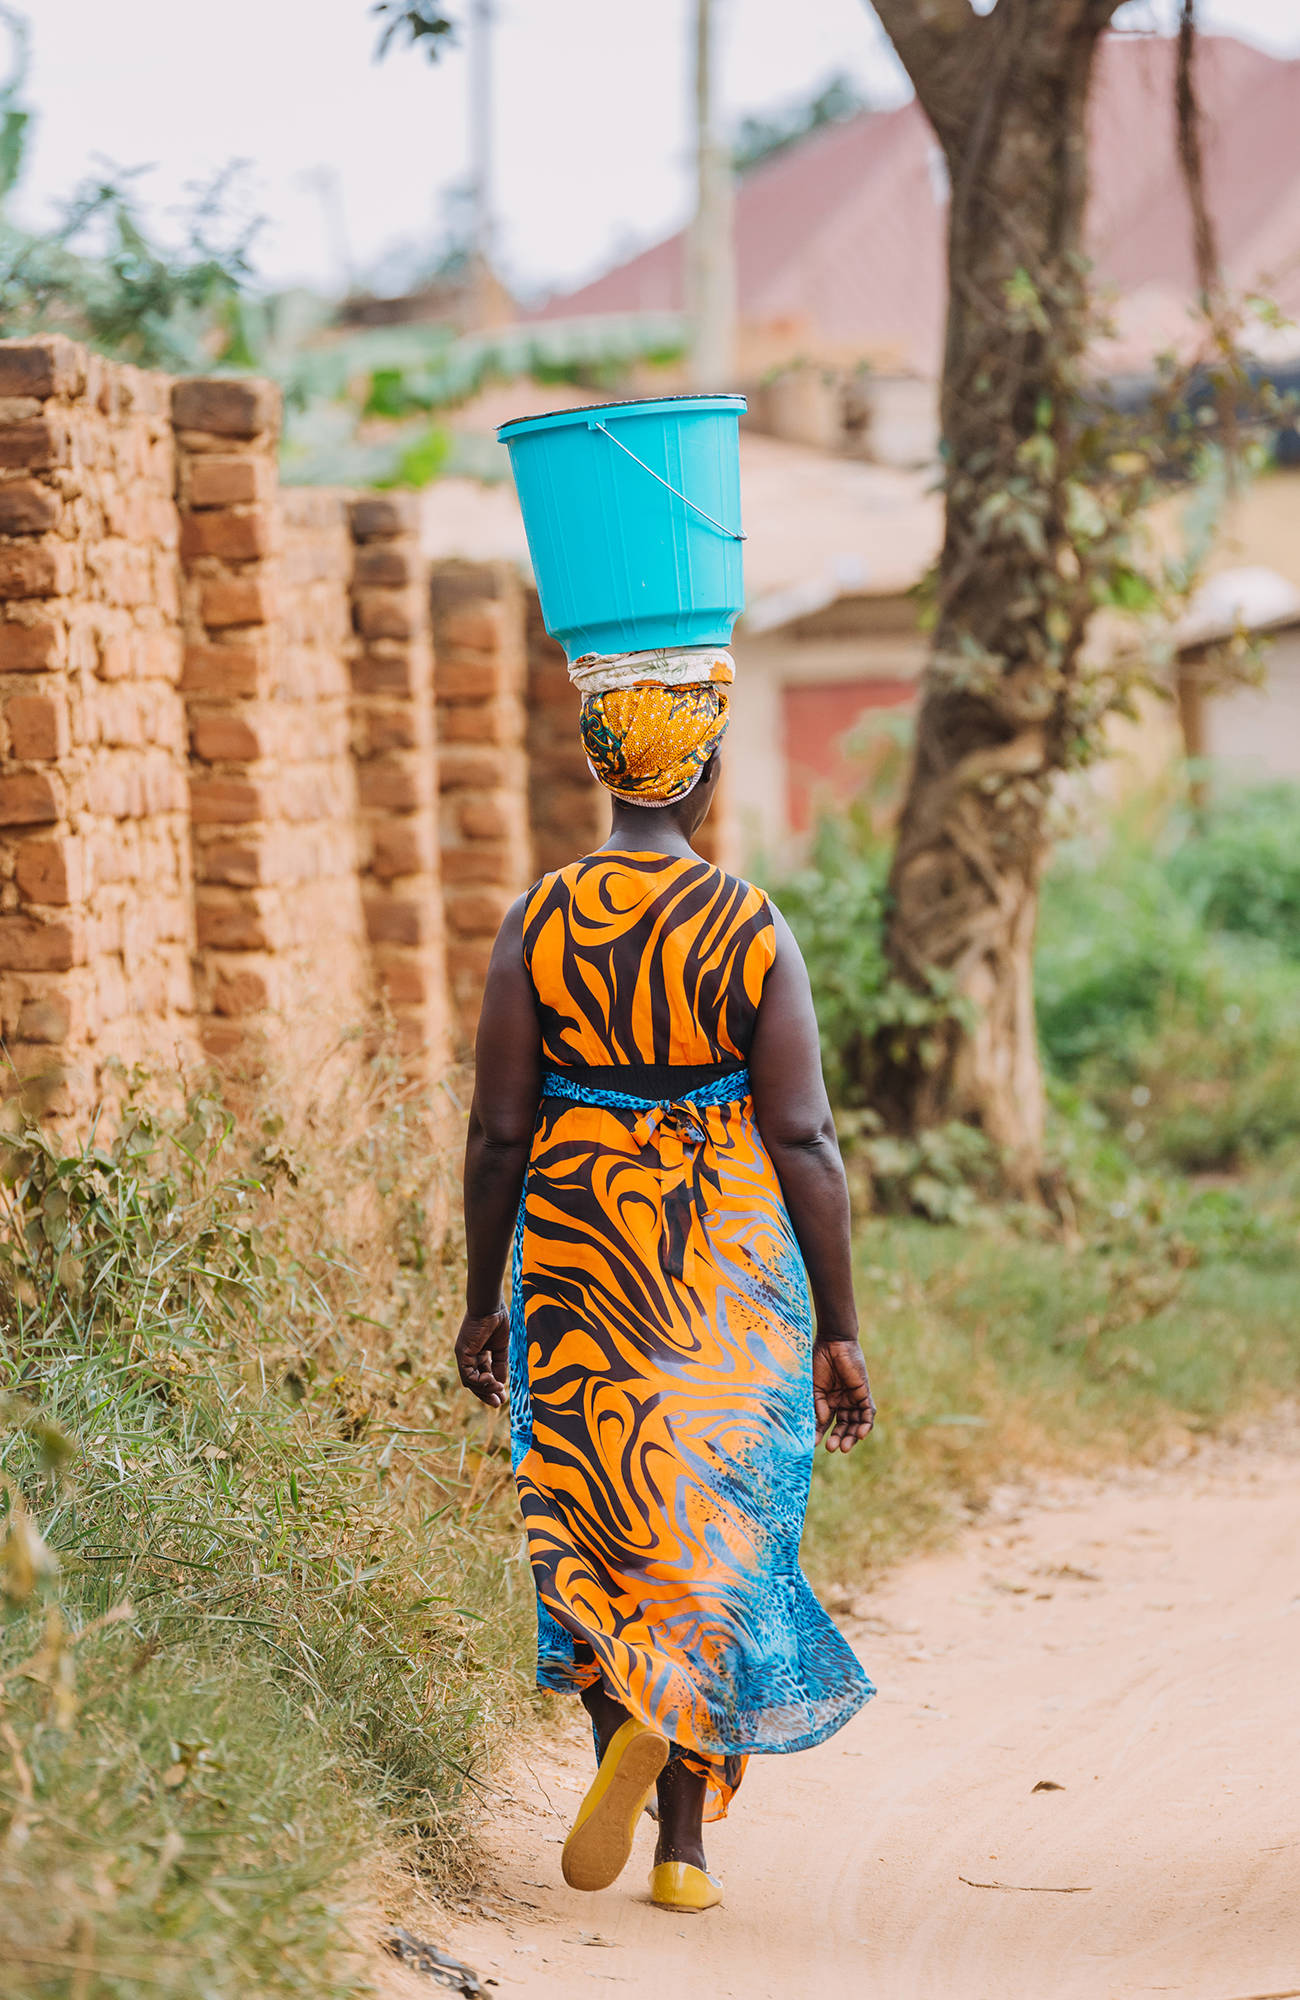 local woman in kampala uganda